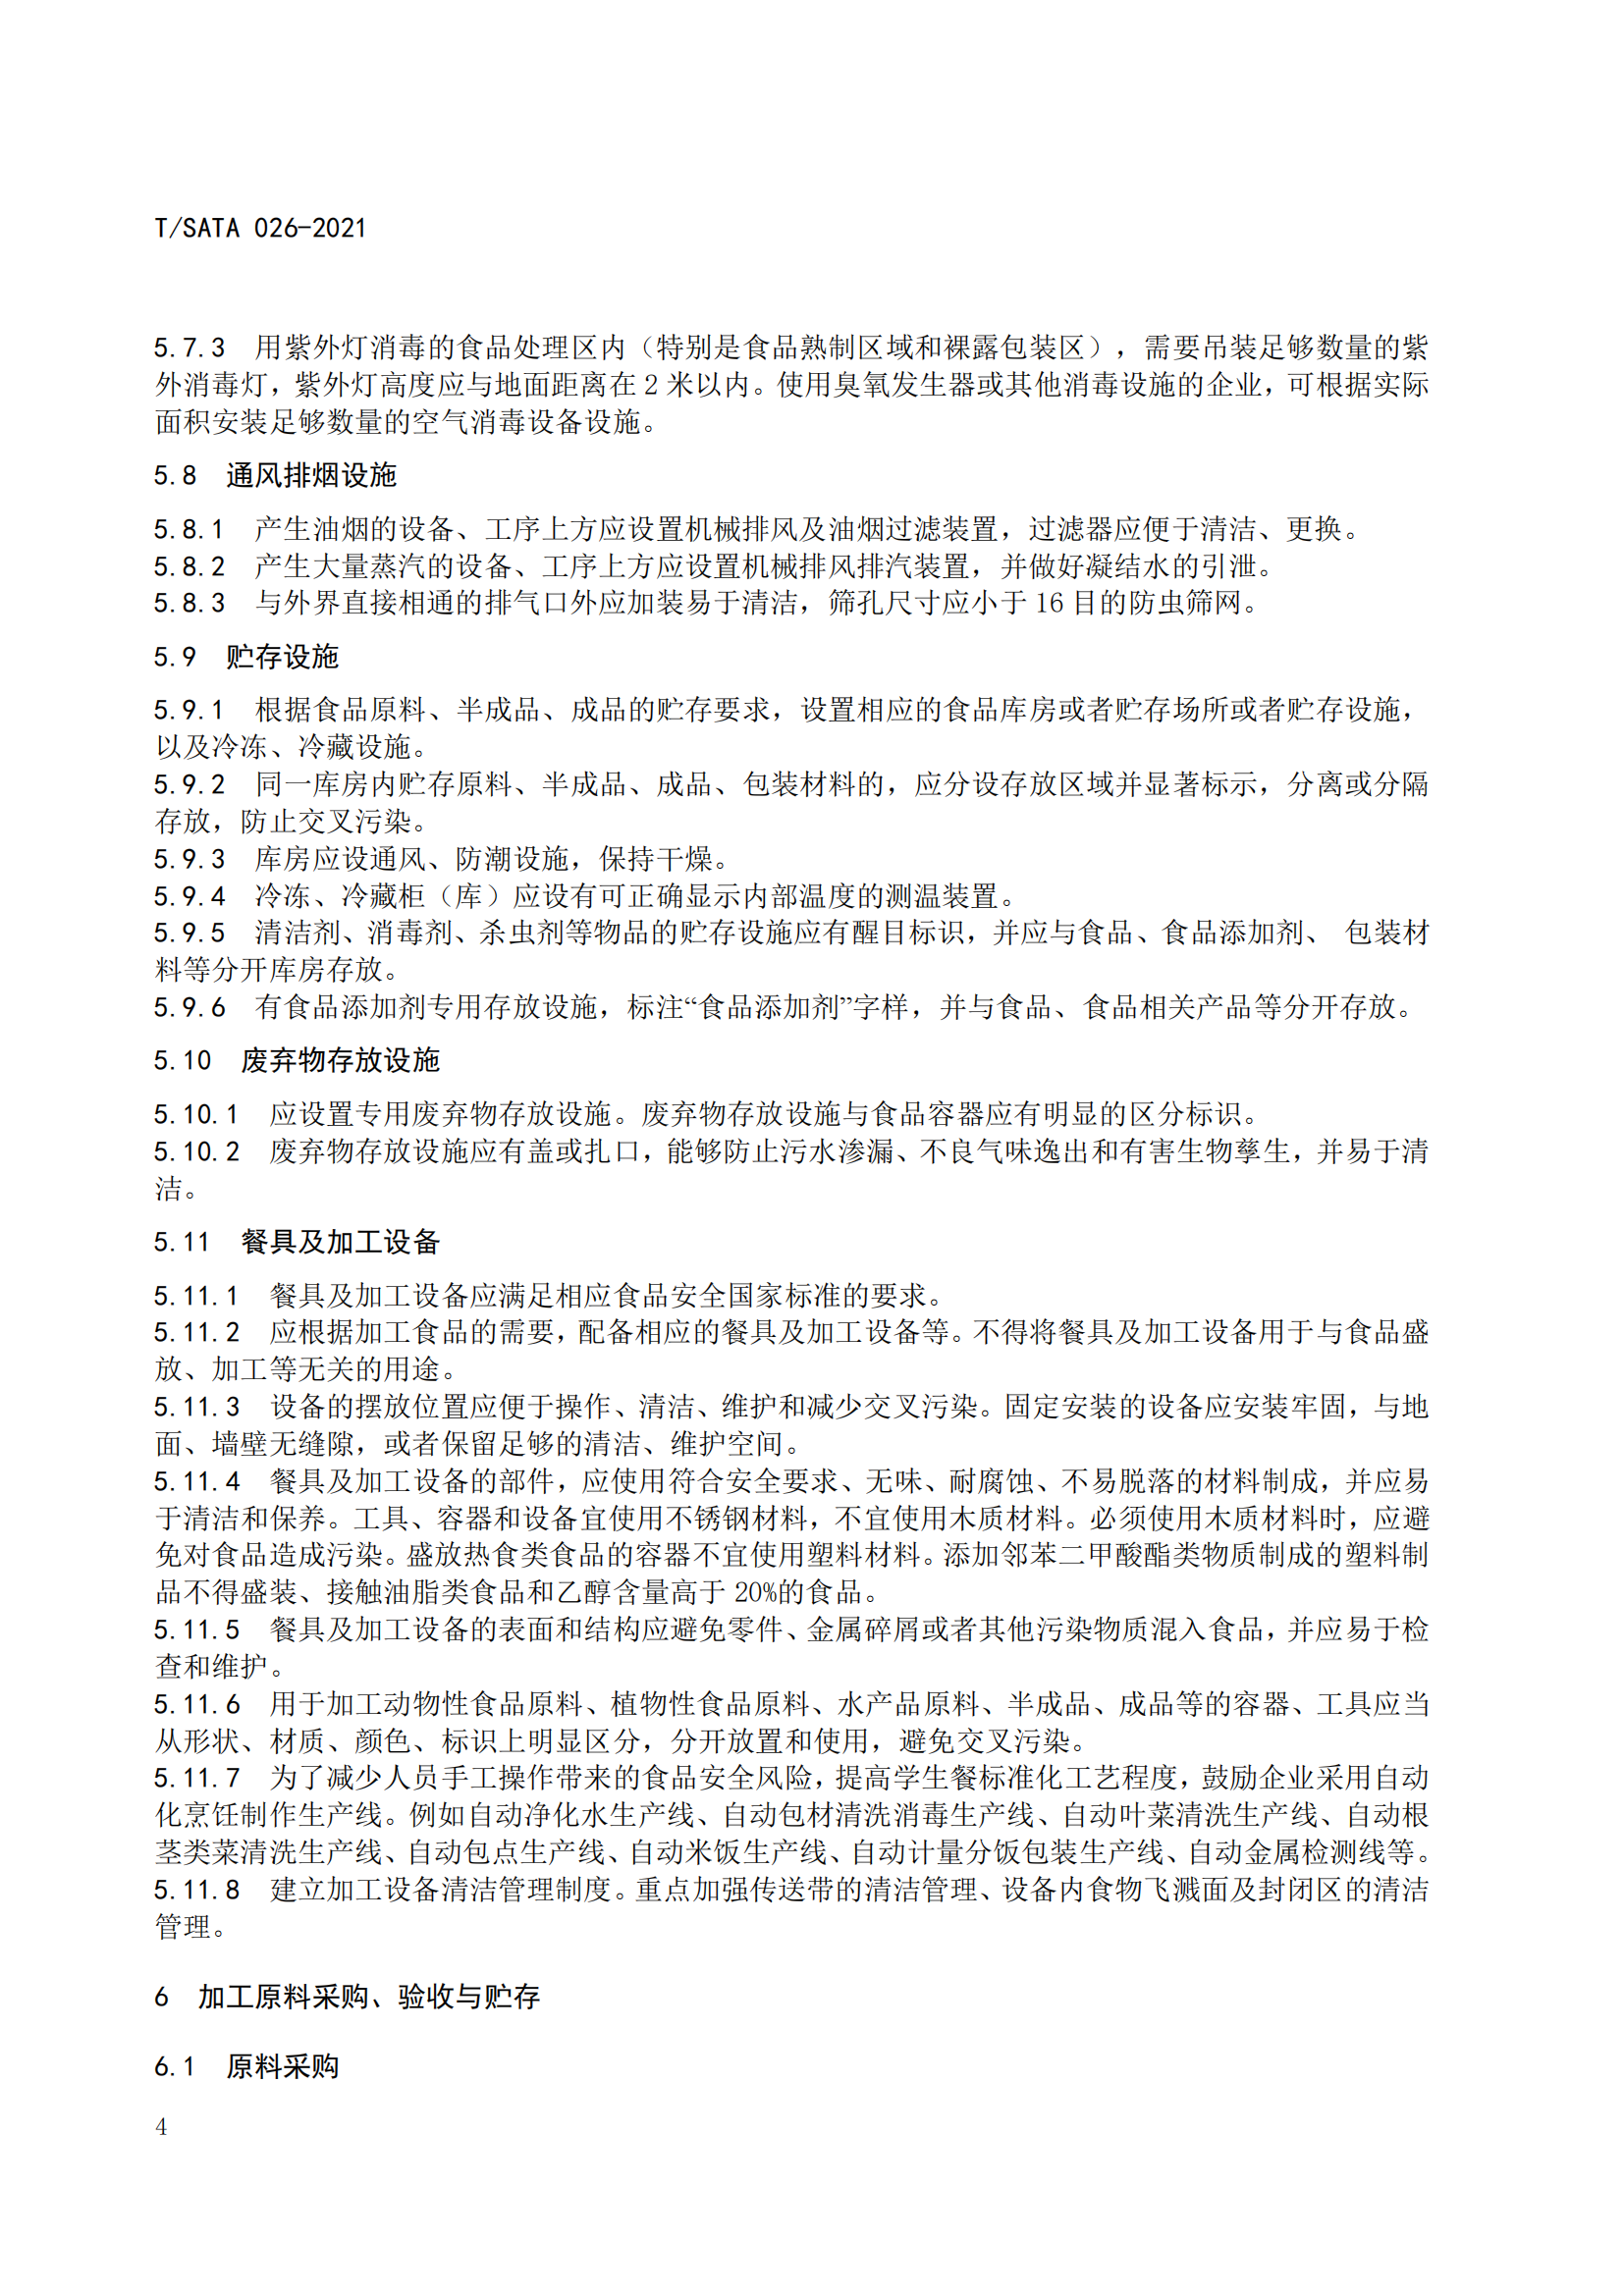 《深圳市校外集中配送学生餐操作规范》团体标准（发布版）2021.11.18终_06.png